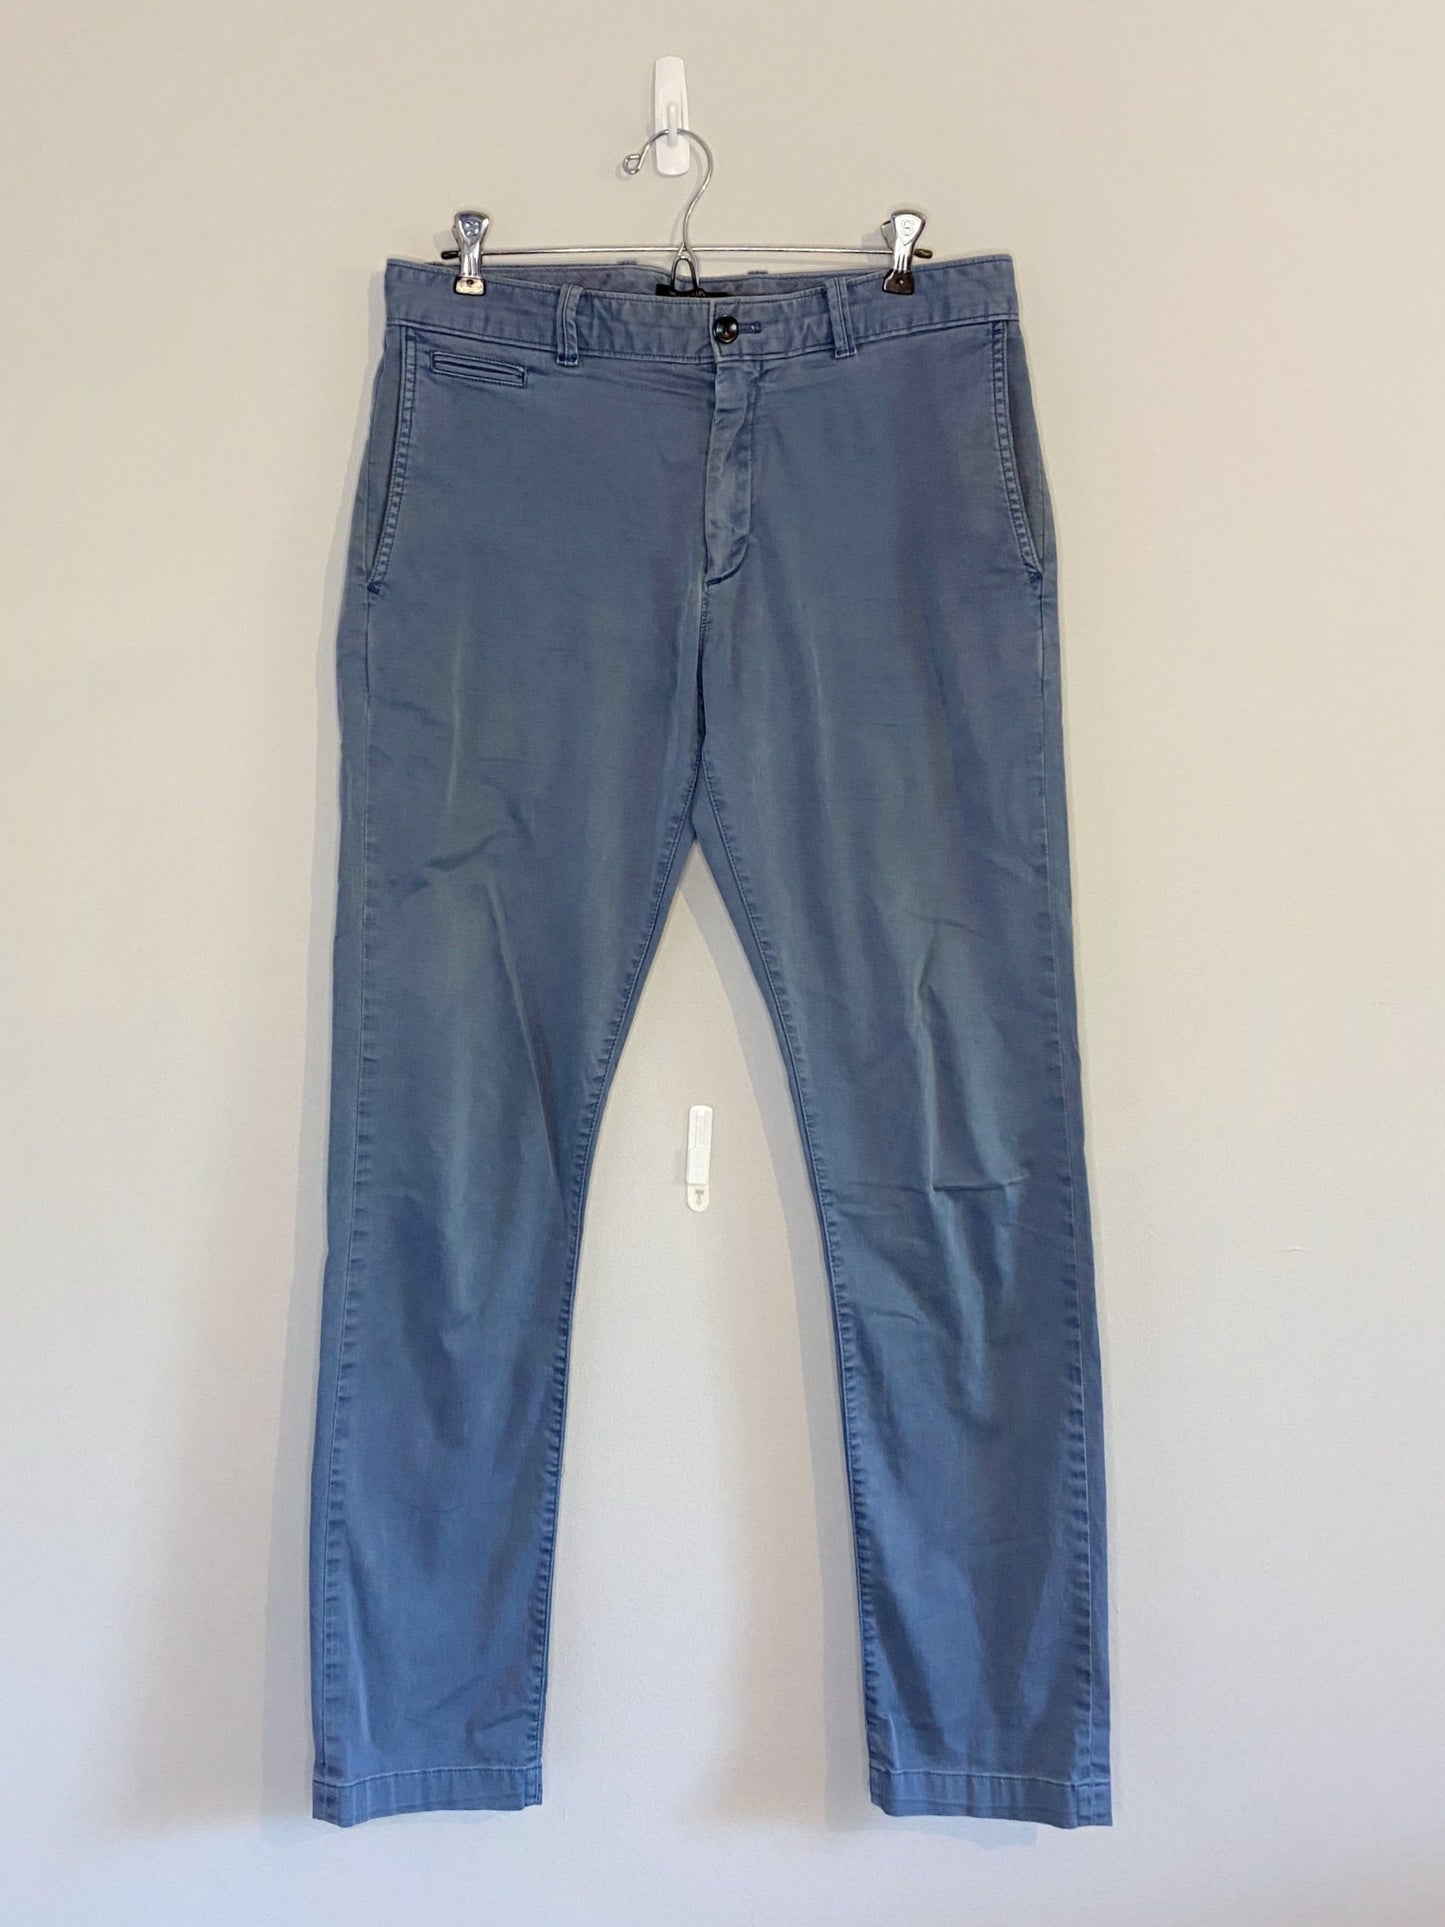 Pantalon Bleu Clair (Taille 31x32)